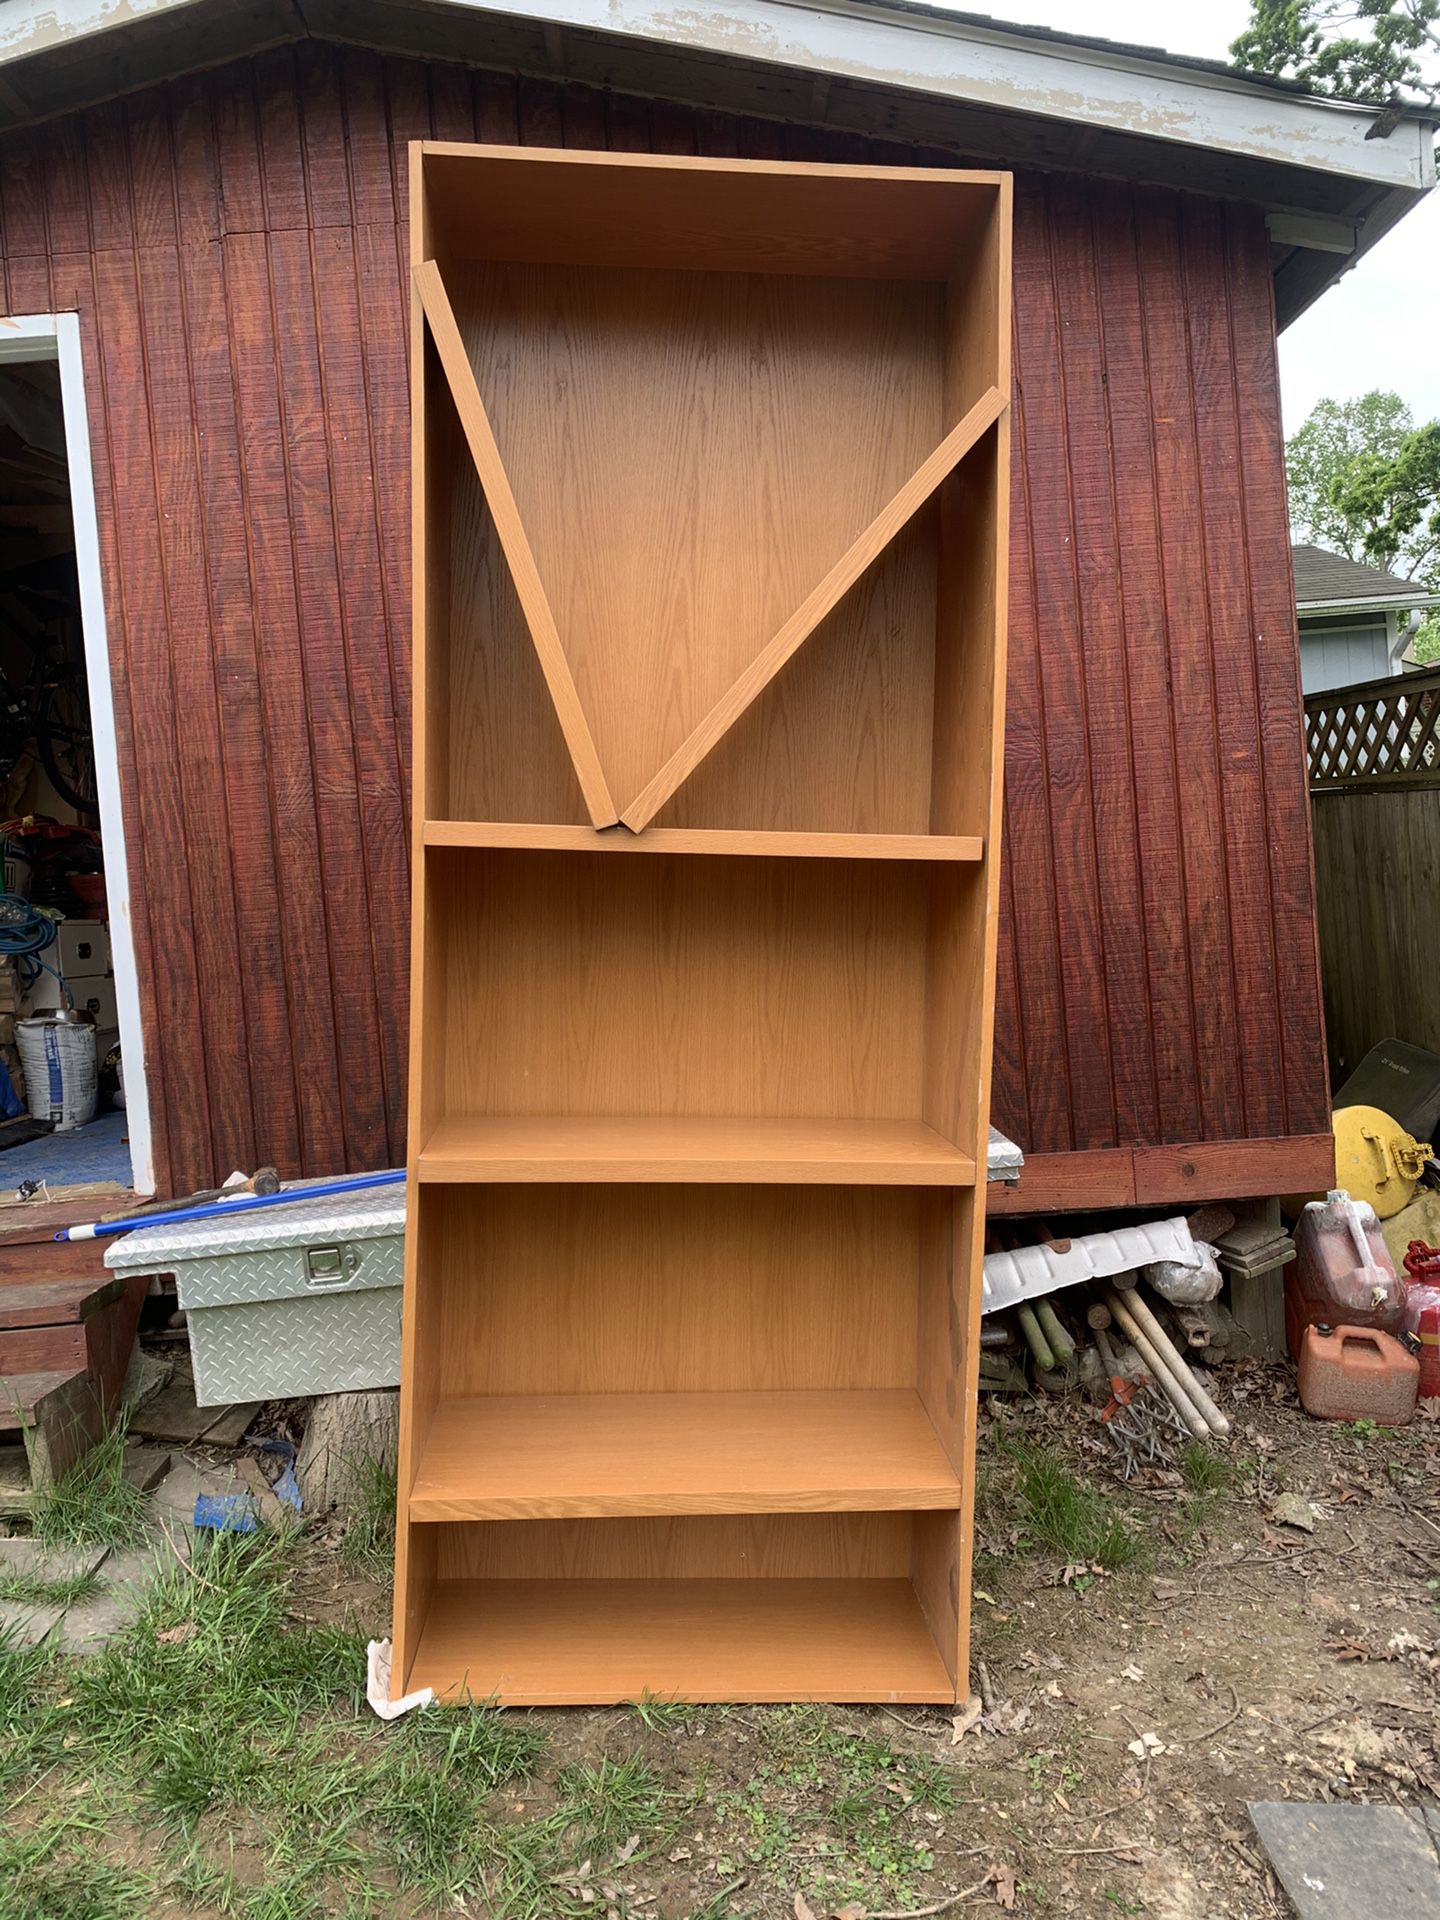 TWO 8’ Tall Bookshelves